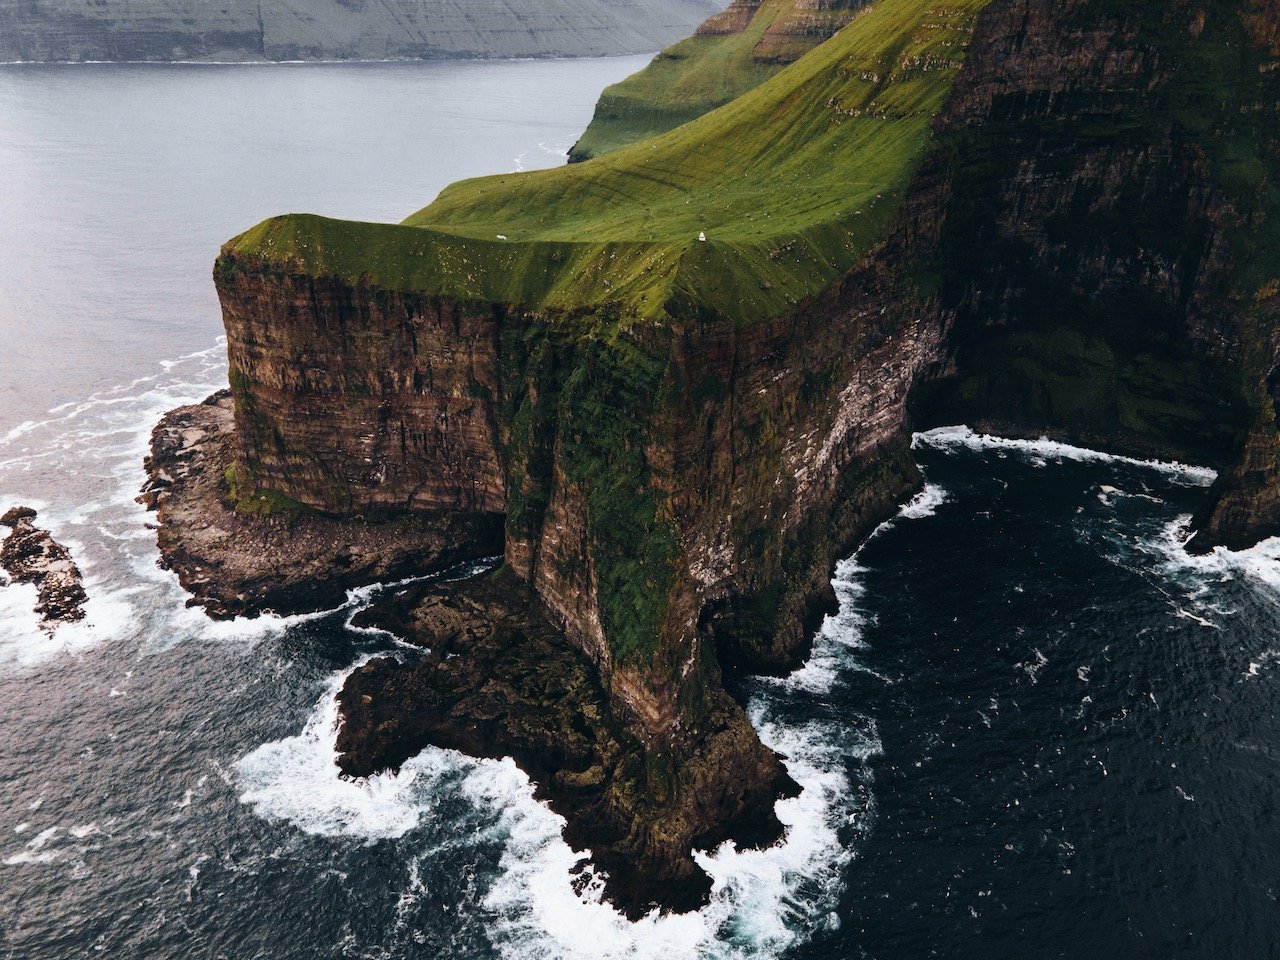   Kallur Lighthouse, Kalsoy, Faroe Islands (ISO 200, 4.5 mm,  f /2.8, 1/30 s)  